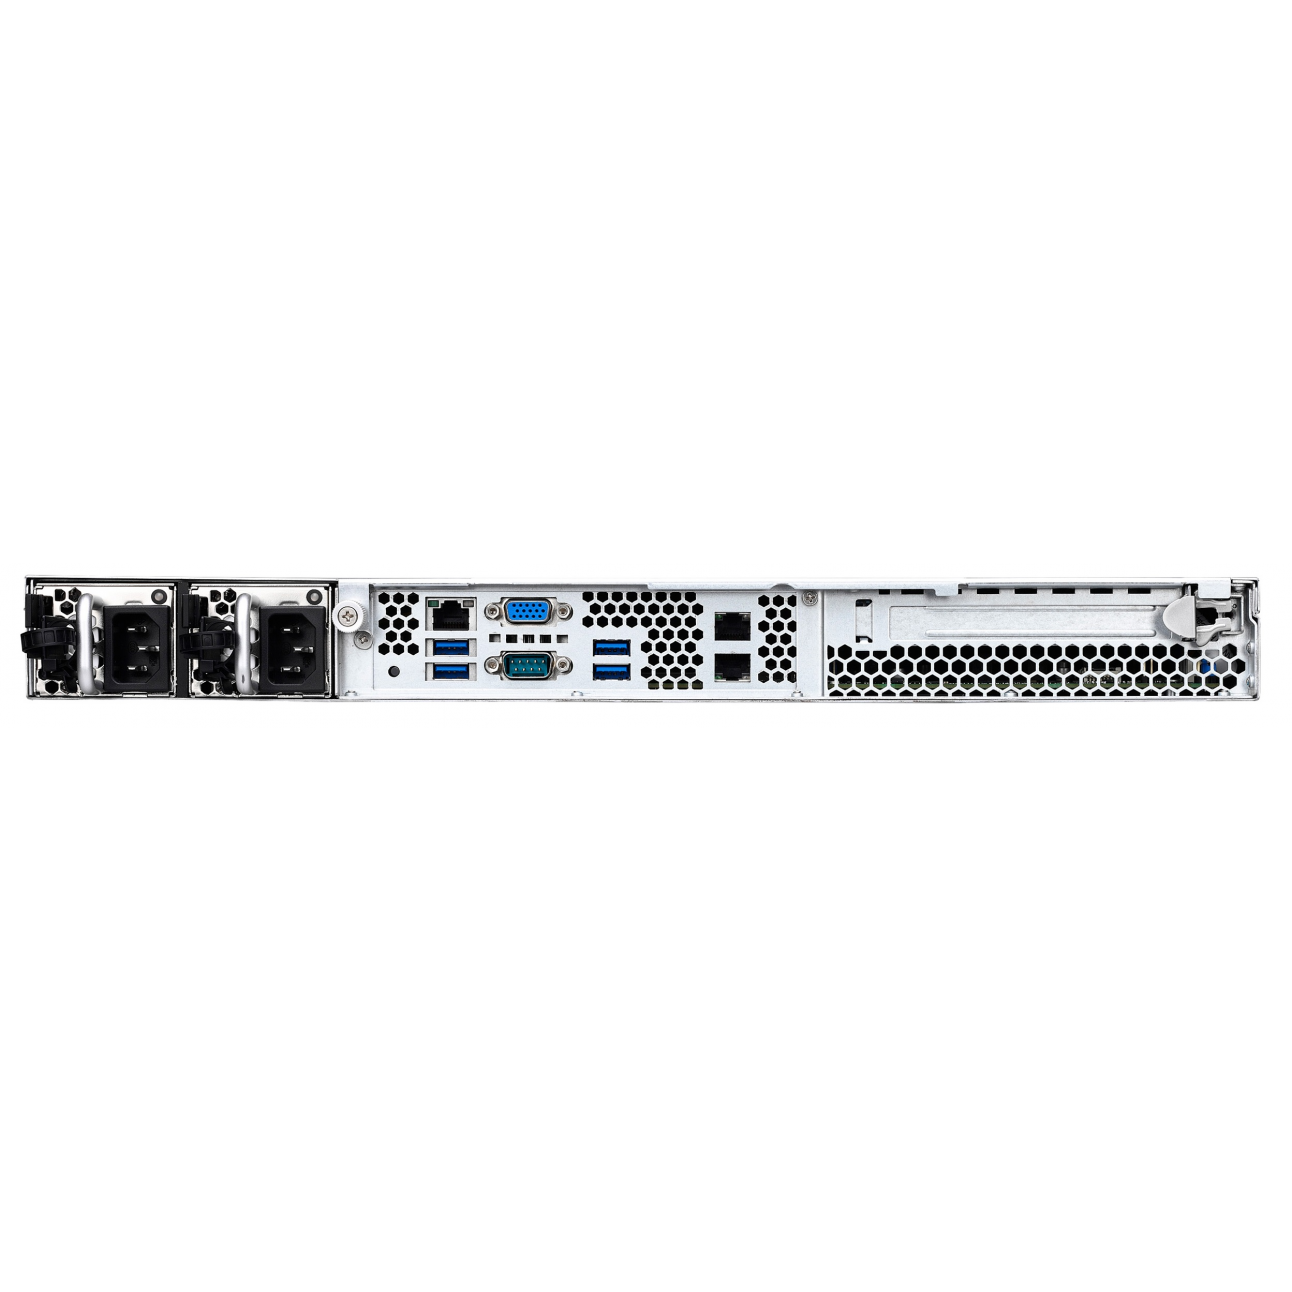 Сервер SNR-SR160R-V5, 1U, 1 процессор Intel Xeon E3-1220v5, 16G DDR4, 2x1TB HDD, резервируемый БП